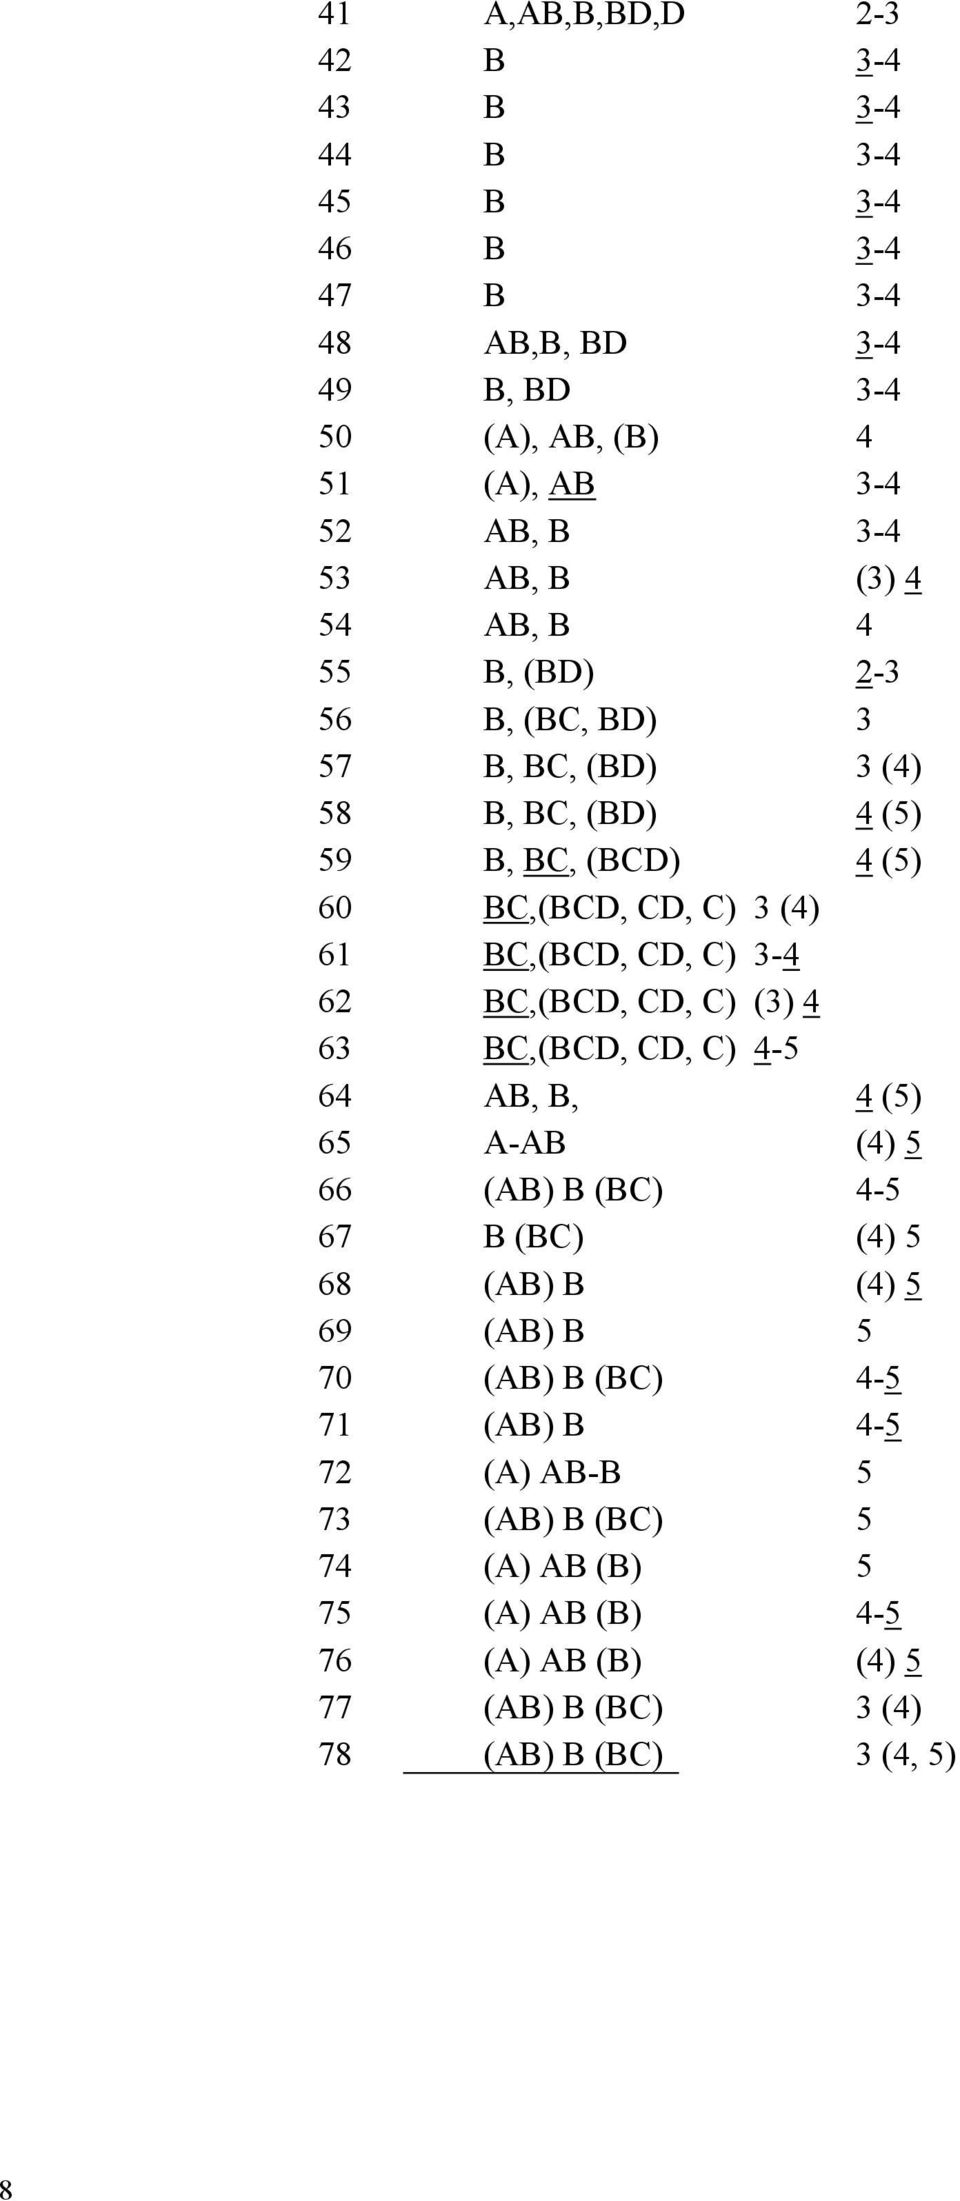 CD, C) 3-4 62 BC,(BCD, CD, C) (3) 4 63 BC,(BCD, CD, C) 4-5 64 AB, B, 4 (5) 65 A-AB (4) 5 66 (AB) B (BC) 4-5 67 B (BC) (4) 5 68 (AB) B (4) 5 69 (AB) B 5 70